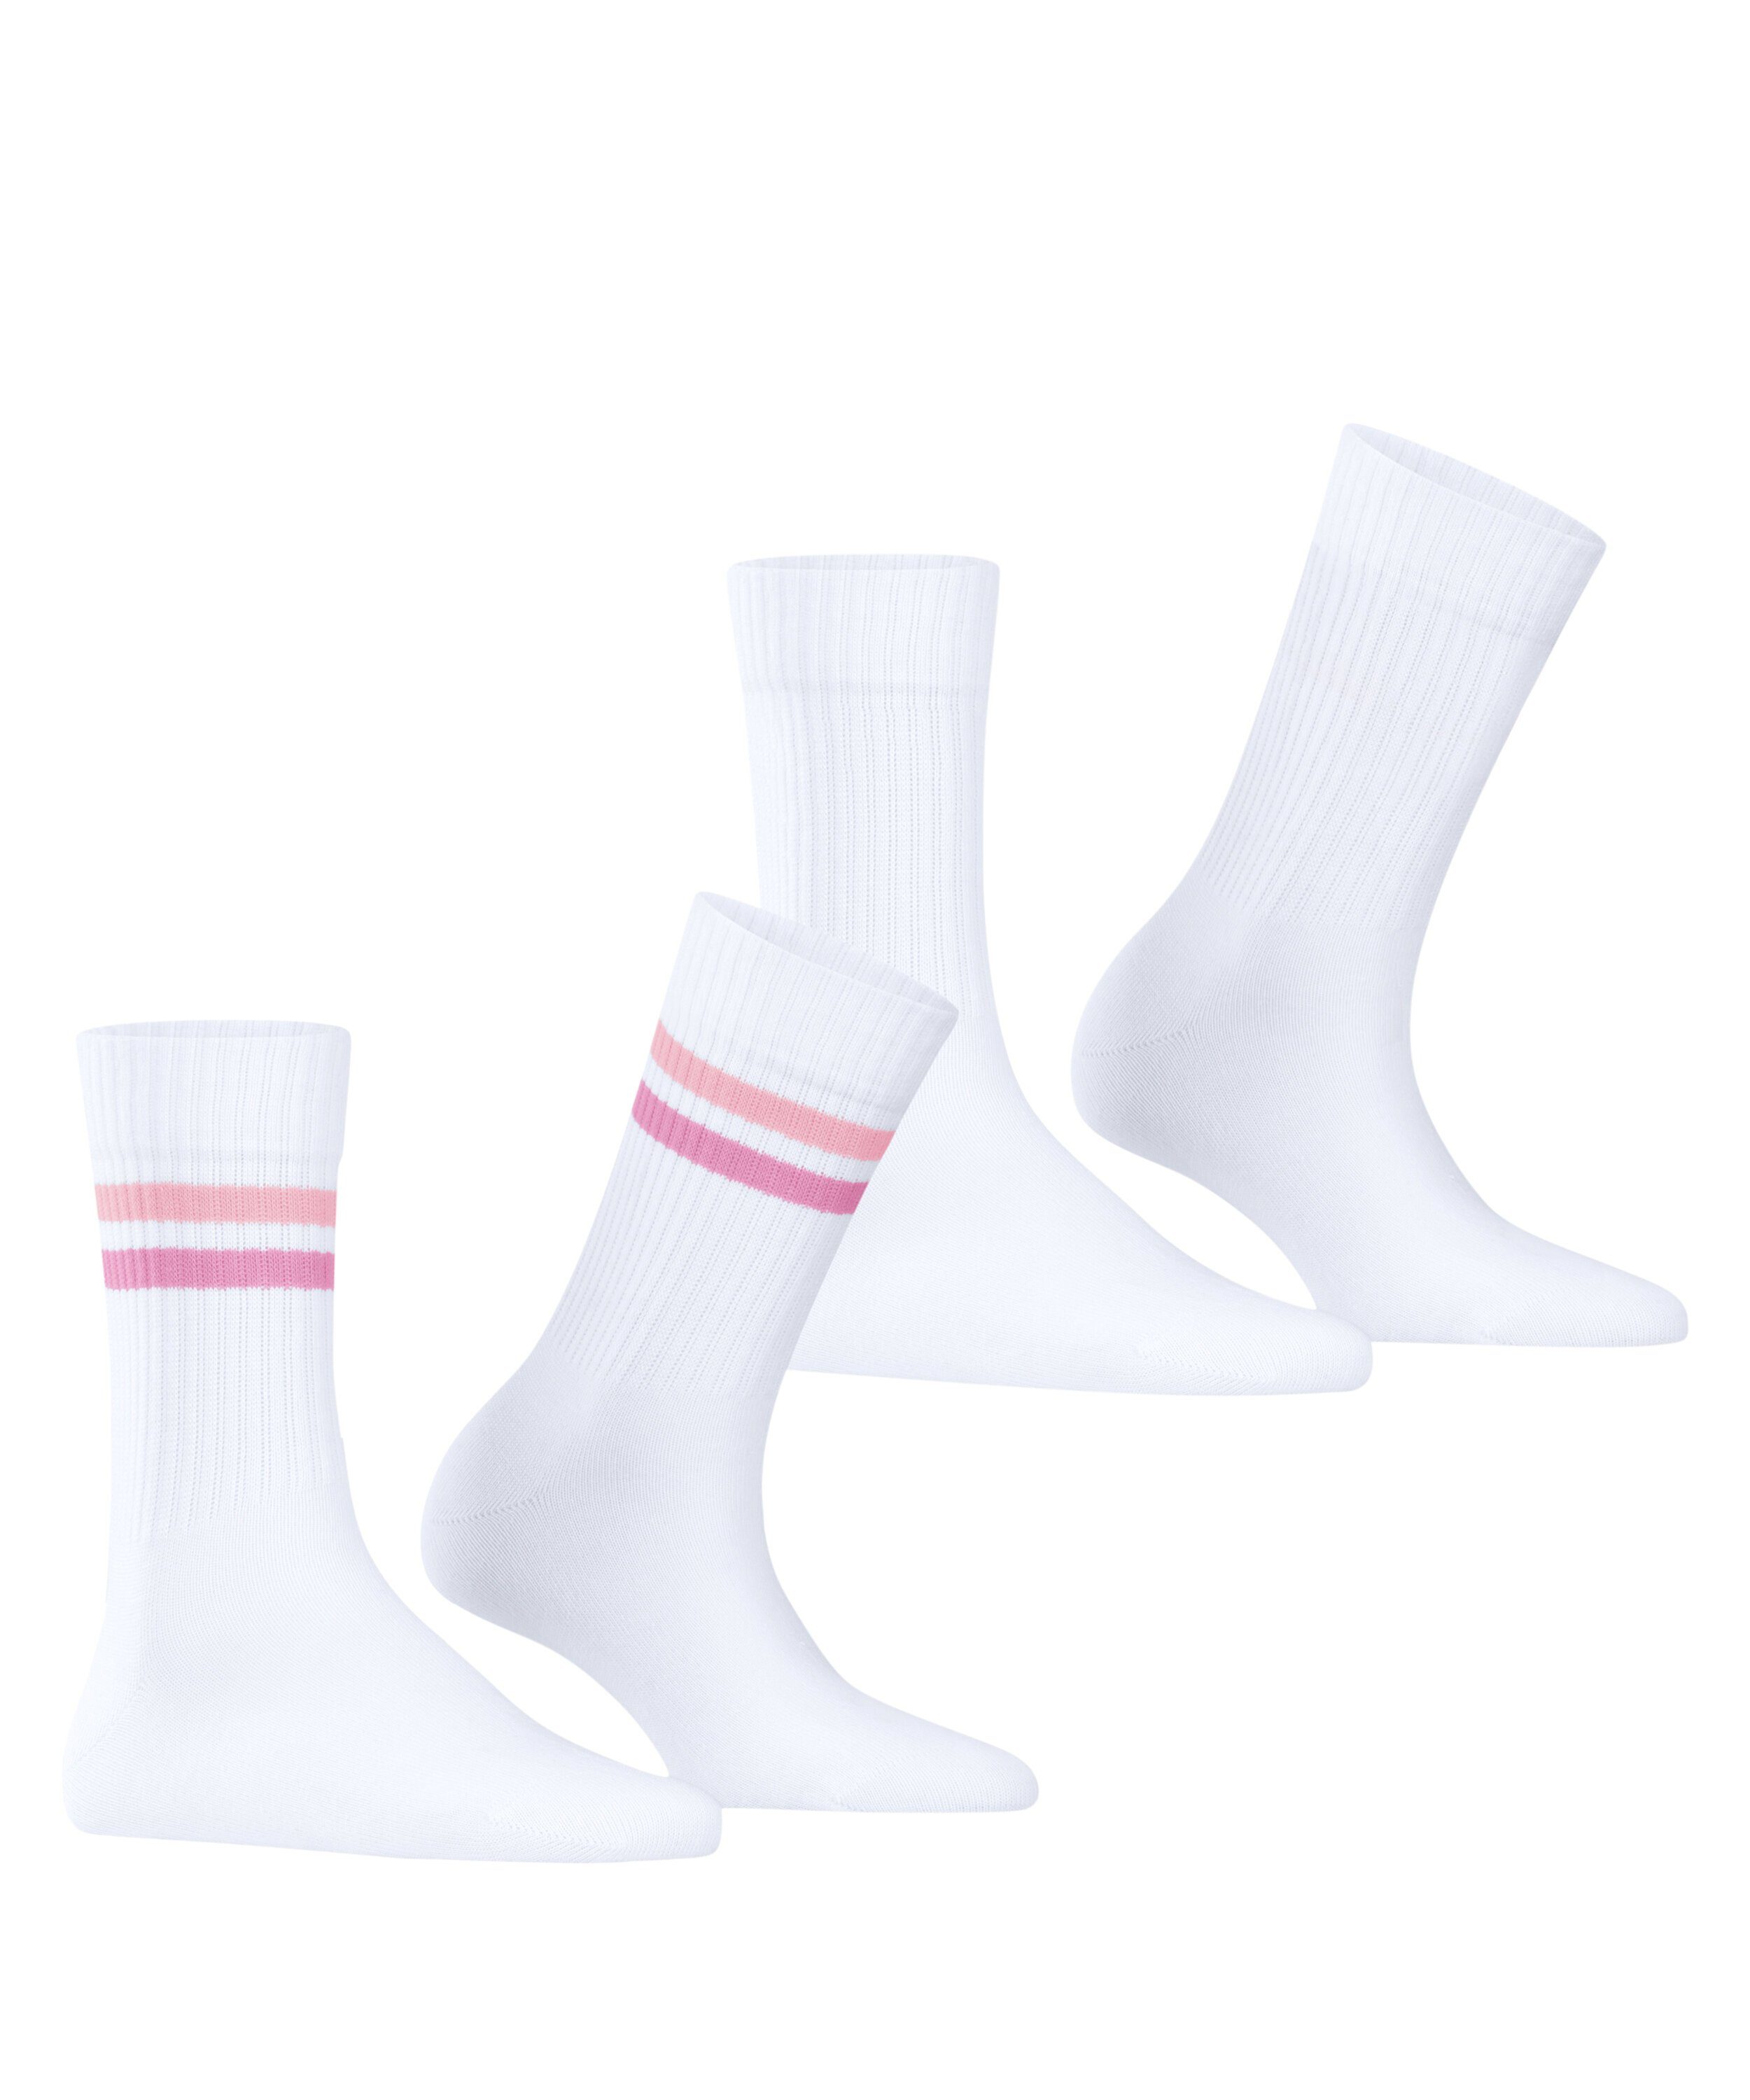 Esprit (2060) Tennis 2-Pack (2-Paar) Socken Stripe woolwhite